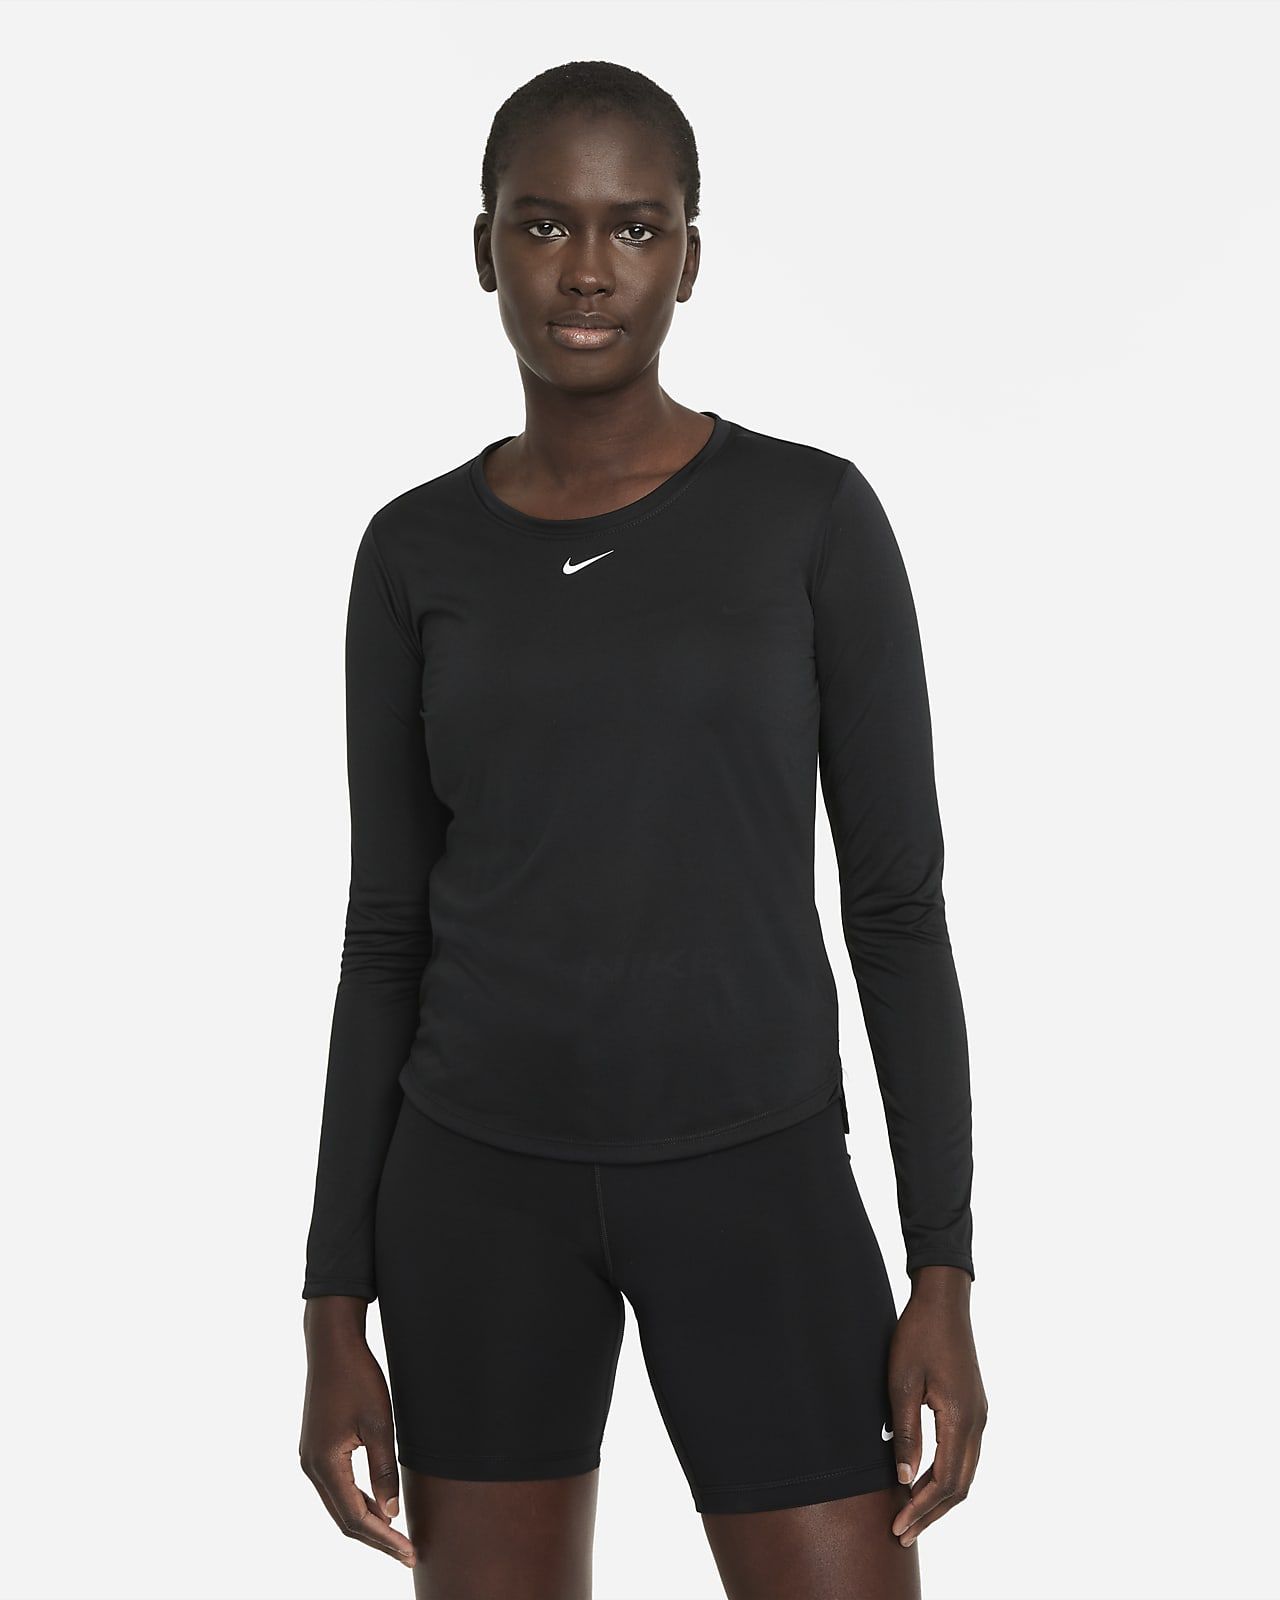 Women's Standard Fit Long-Sleeve Top | Nike (US)